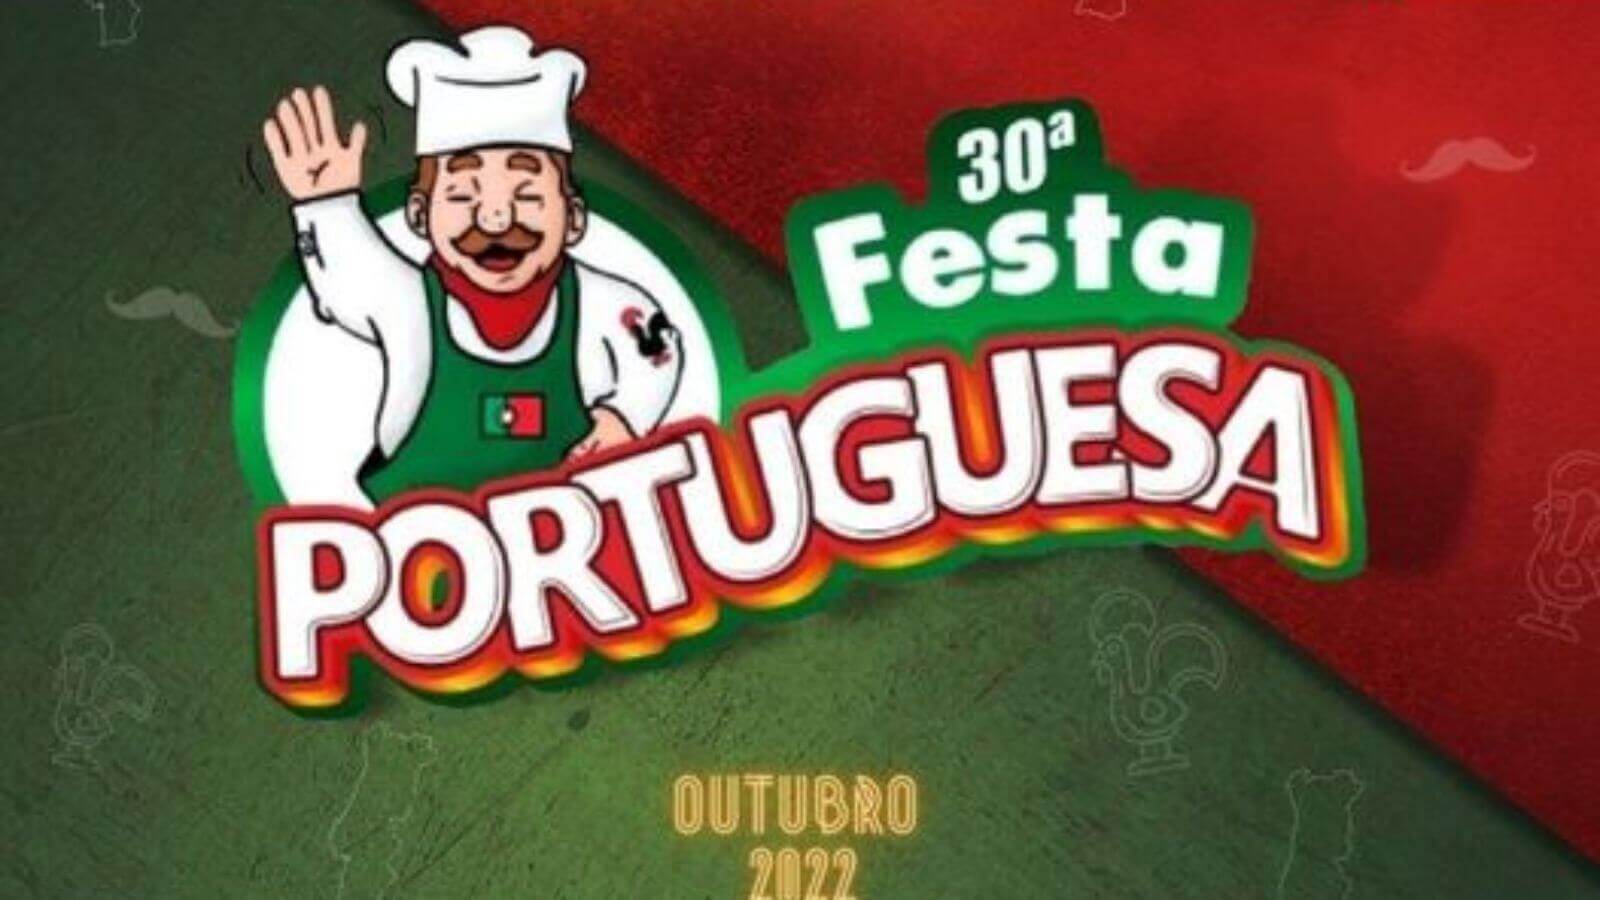 Anúncio de Festa Portuguesa em Jundiaí